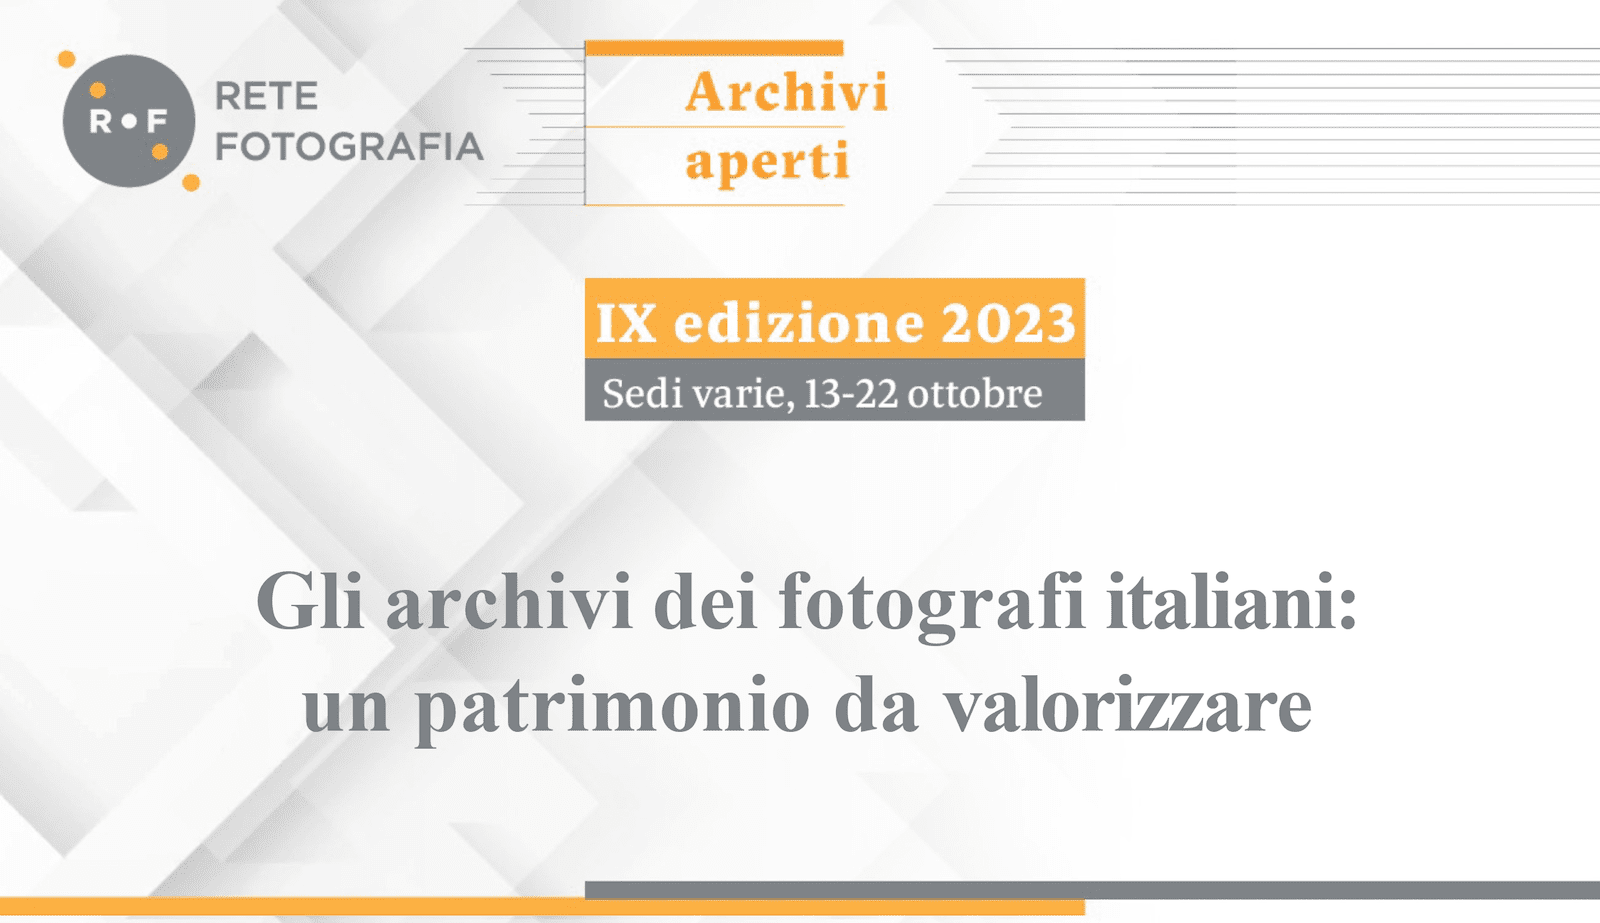 Archivi Aperti 2023. Rete Fotografia per la conservazione e la valorizzazione degli archivi fotografici e del patrimonio fotografico italiano